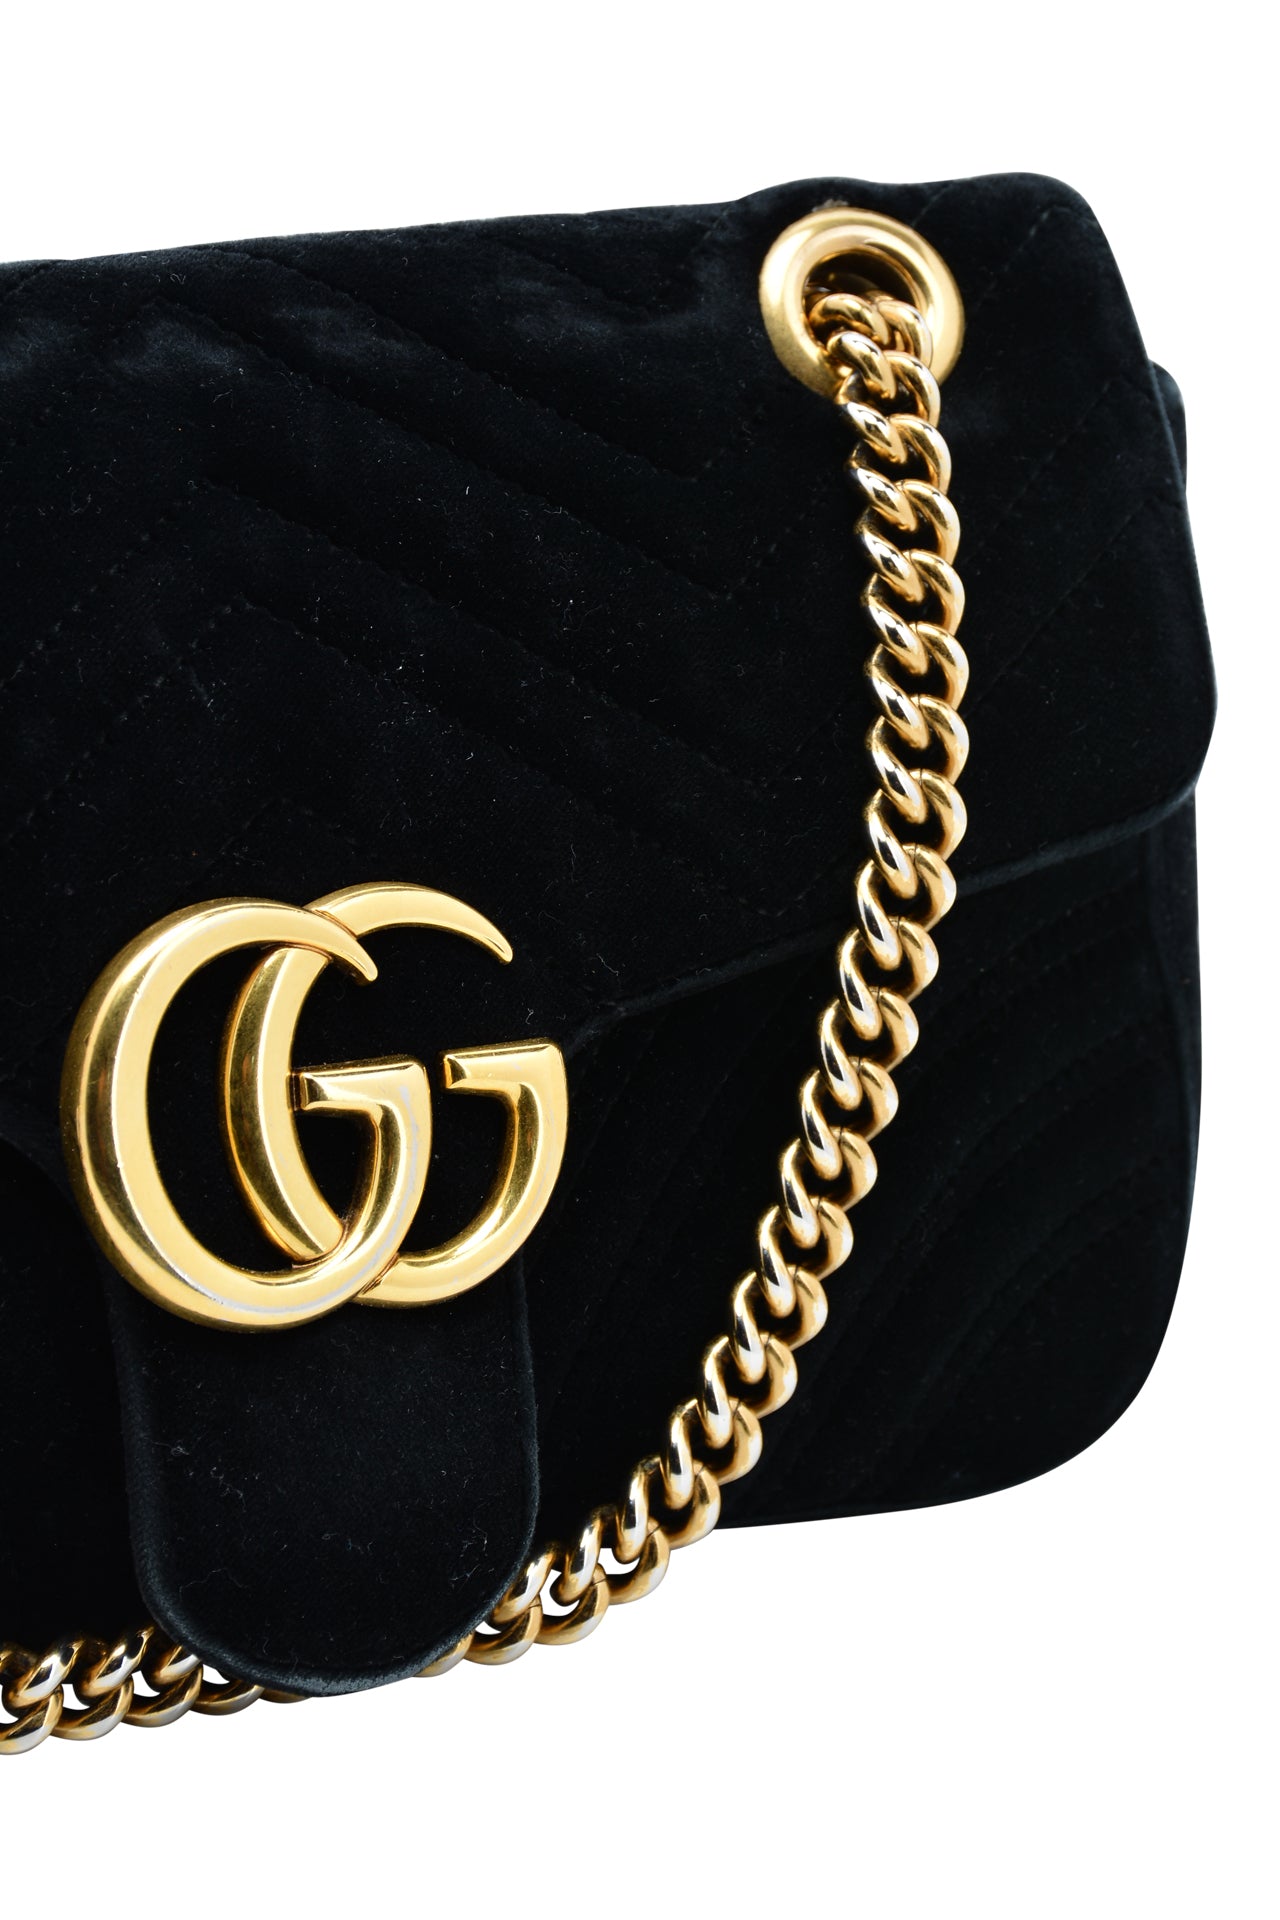 Gucci GG Black Matelasse Velvet Small Bag